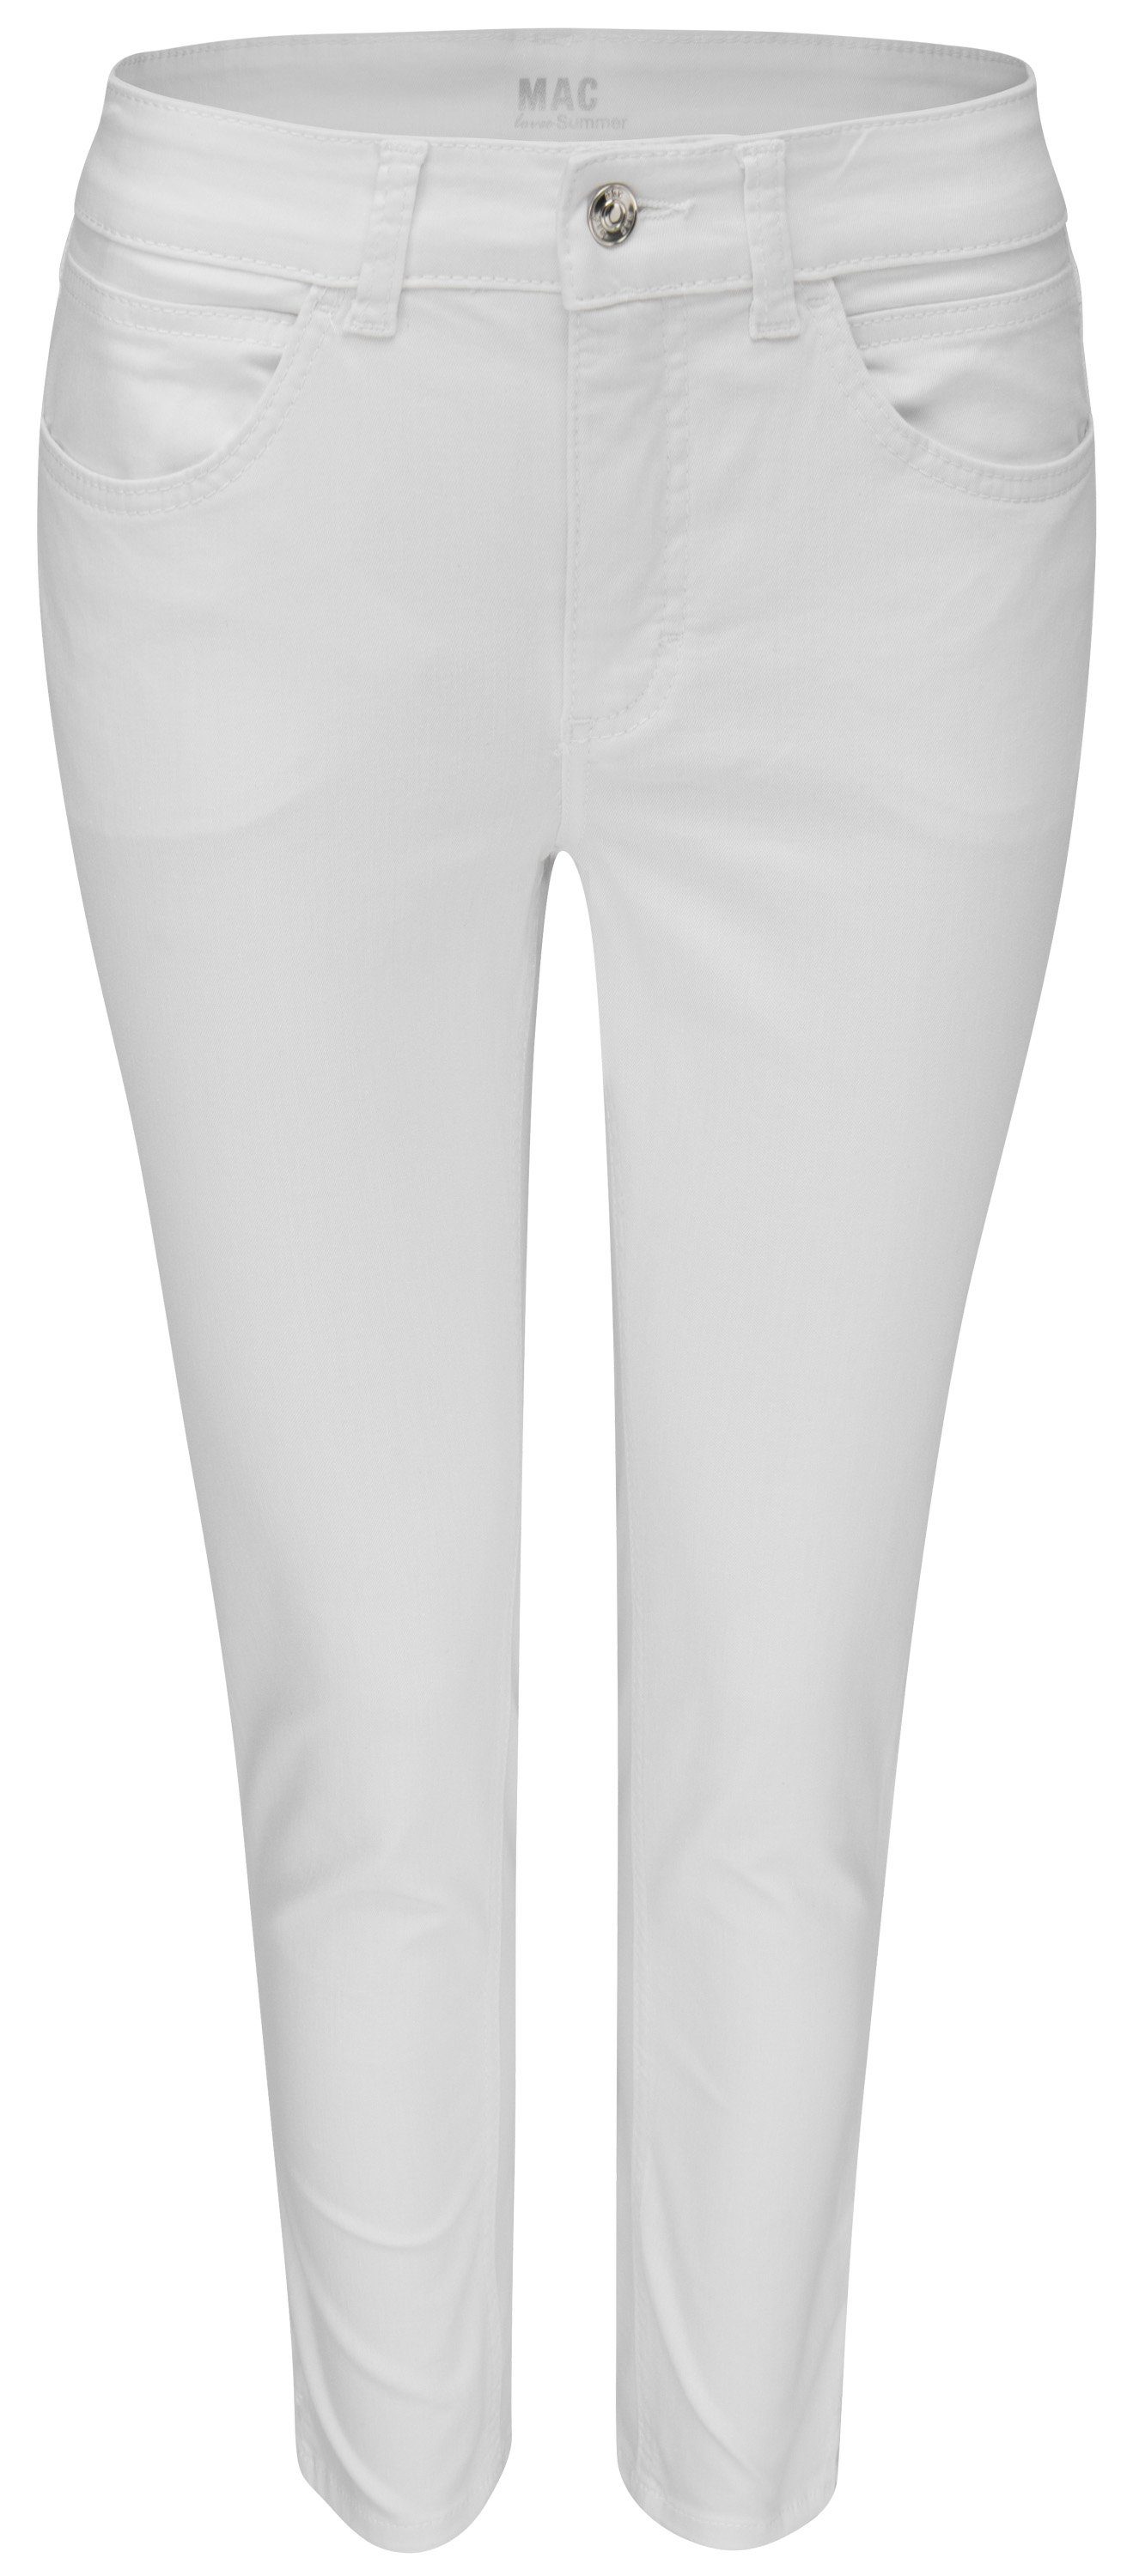 D010 Stretch-Jeans 7/8 MAC nature denim ANGELA SUMMER MAC 5260-90-0394 white